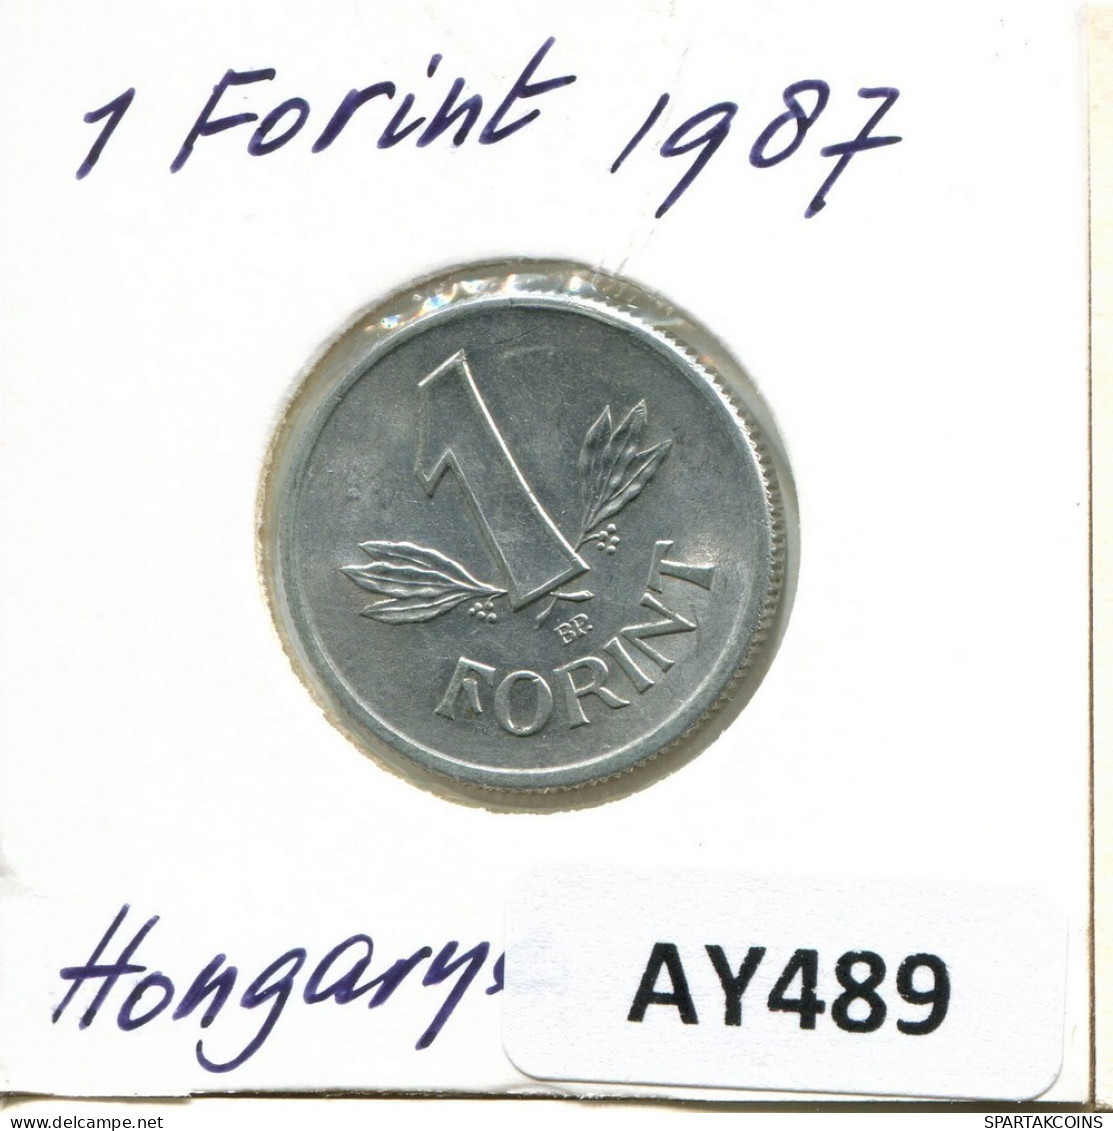 1 FORINT 1987 HONGRIE HUNGARY Pièce #AY489.F.A - Hungary